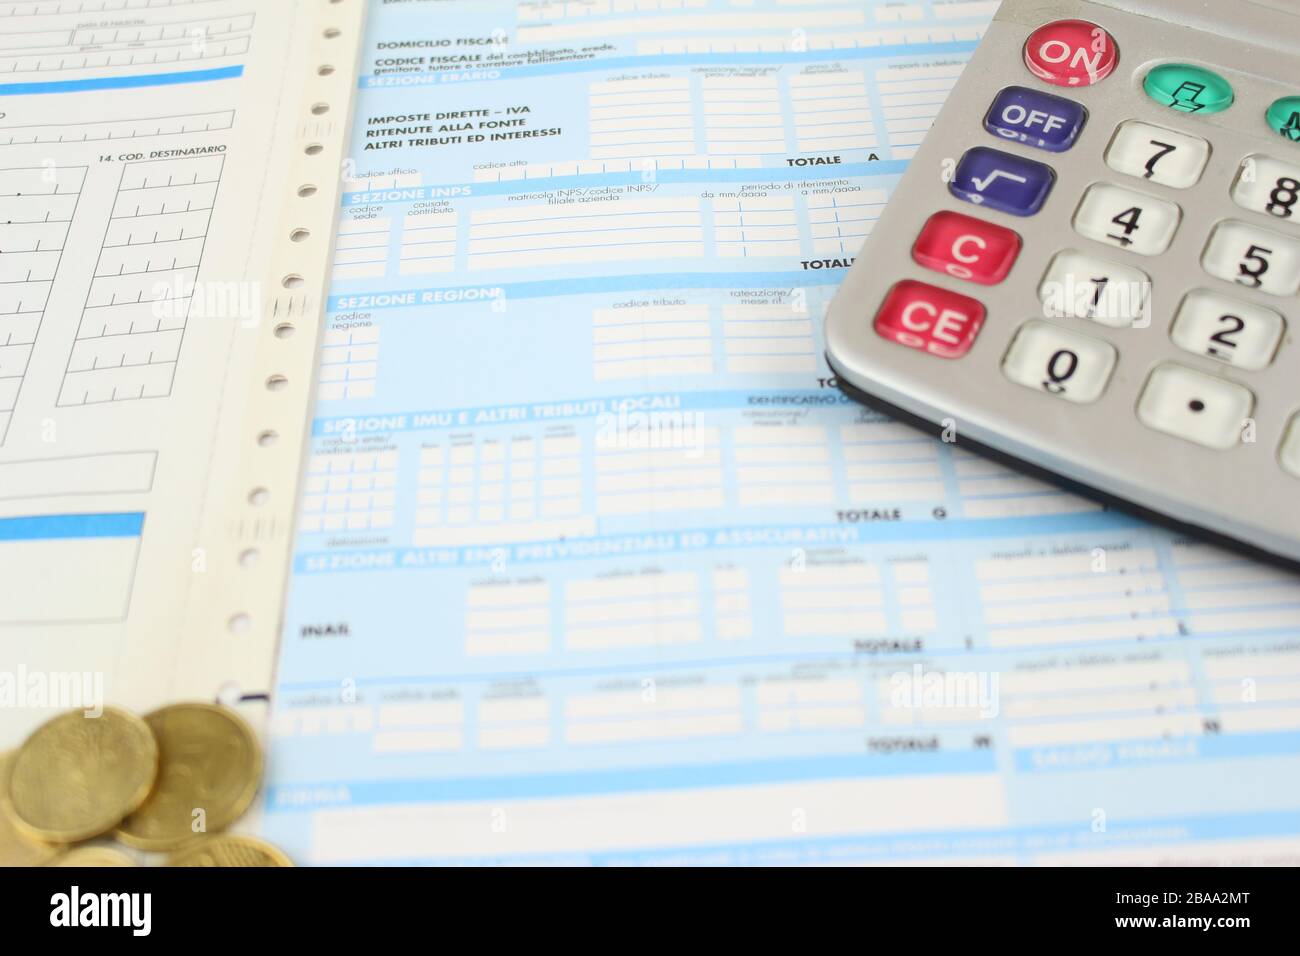 Formulario F23 / F24 para pagar impuestos en Italia al banco. Detalle con calculadora y monedas en euros. Foto de stock